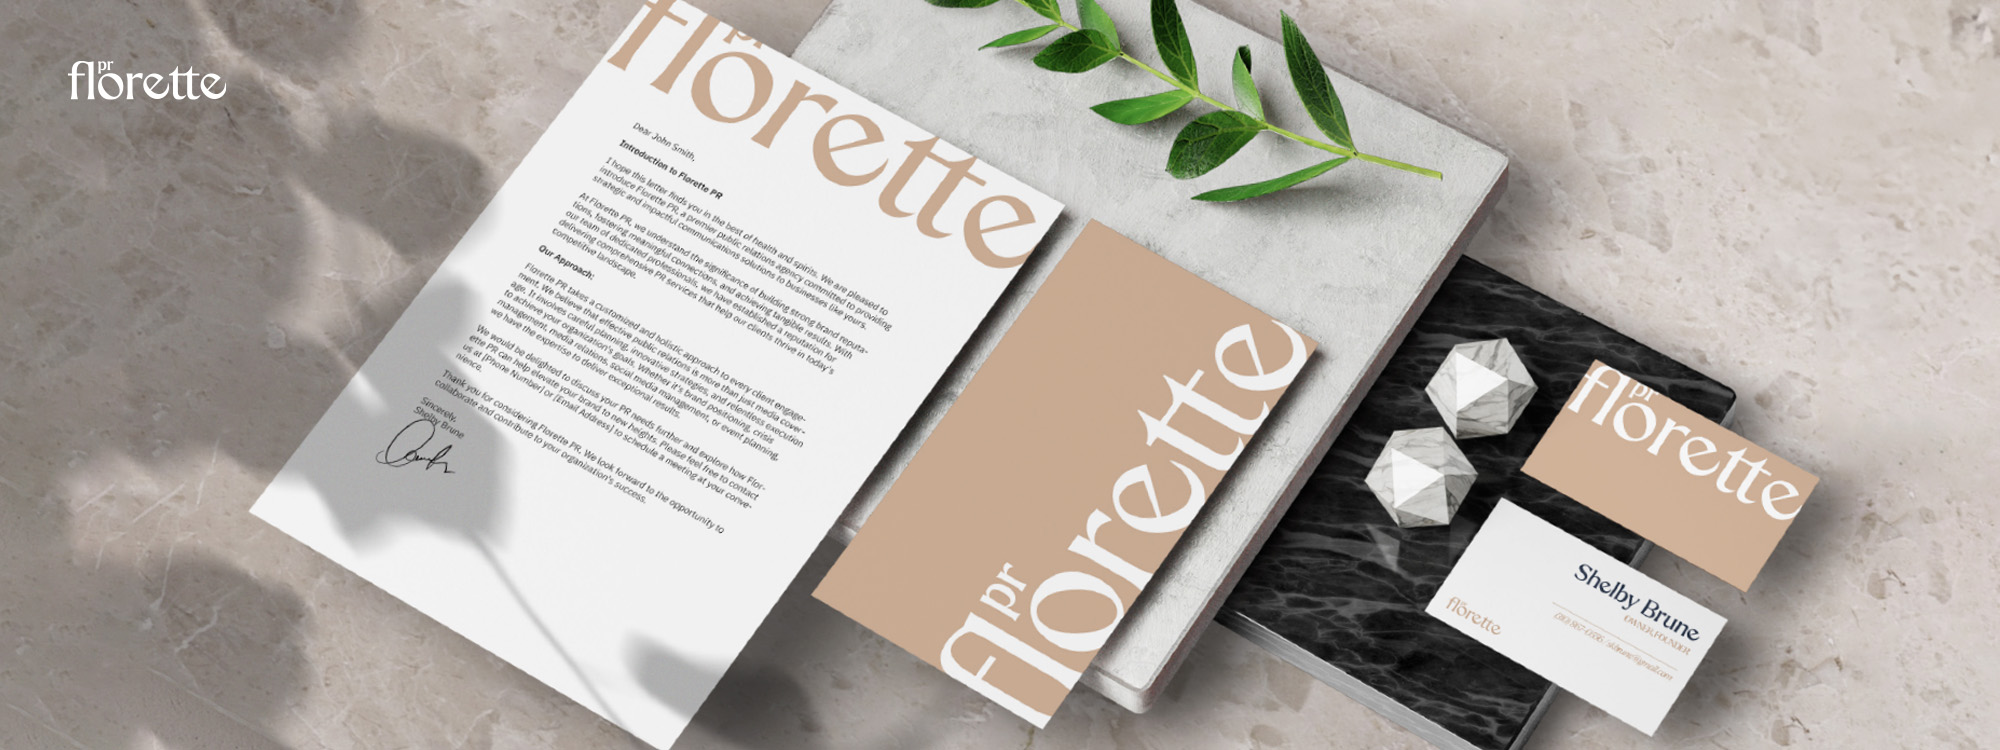 Florette PR Portfolio 1